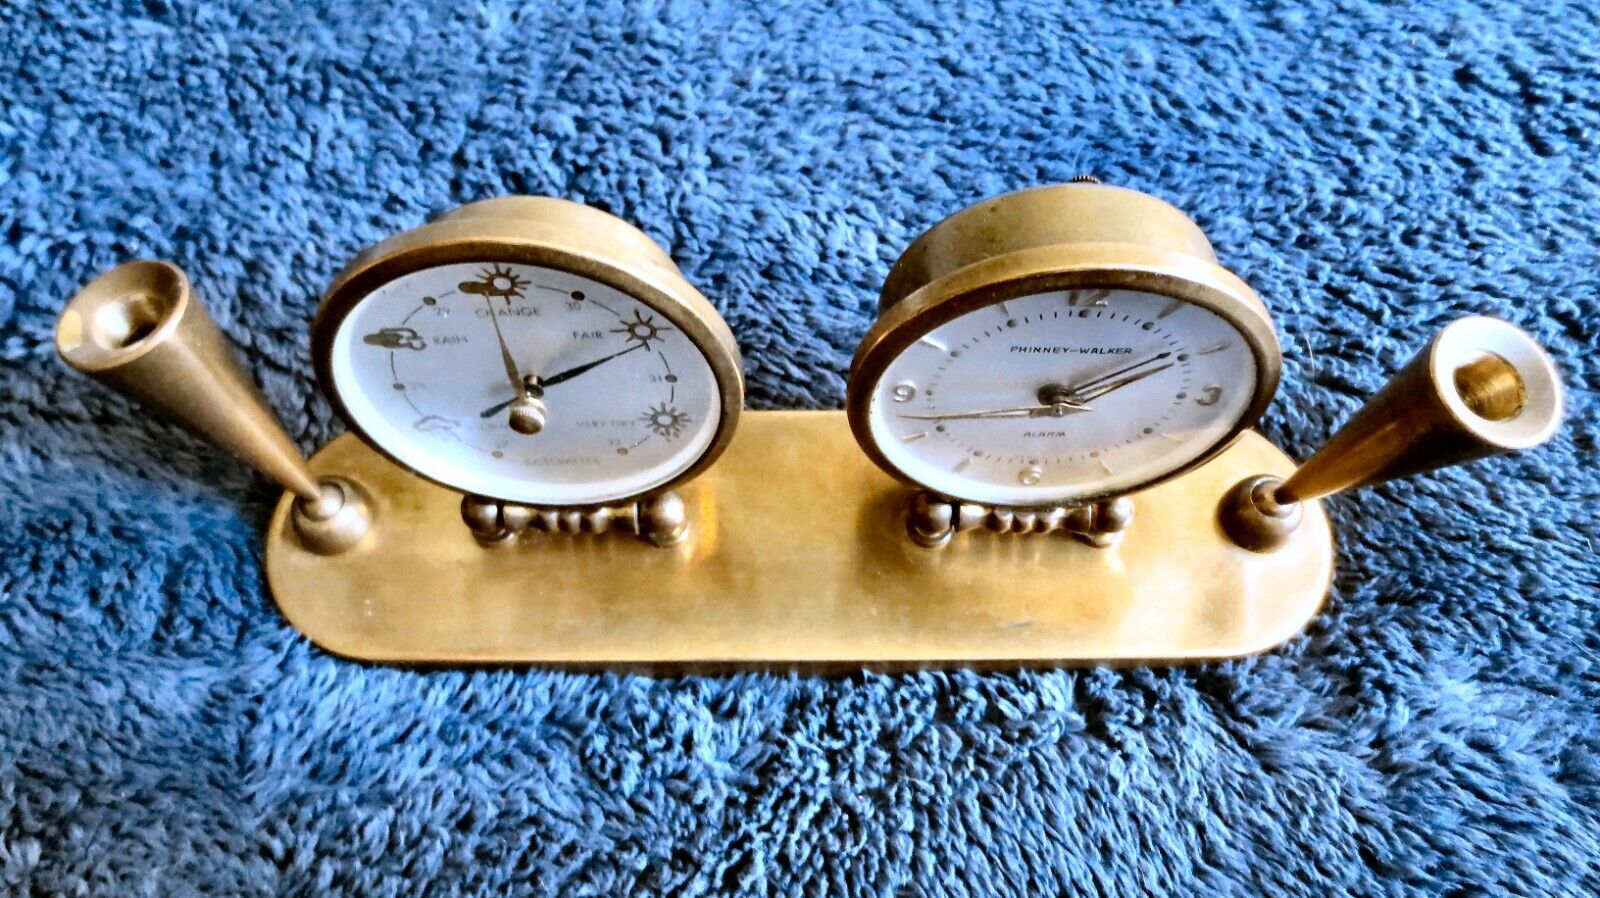 Vintage Phinney-Walker Alarm Clock & Barometer Desk Set